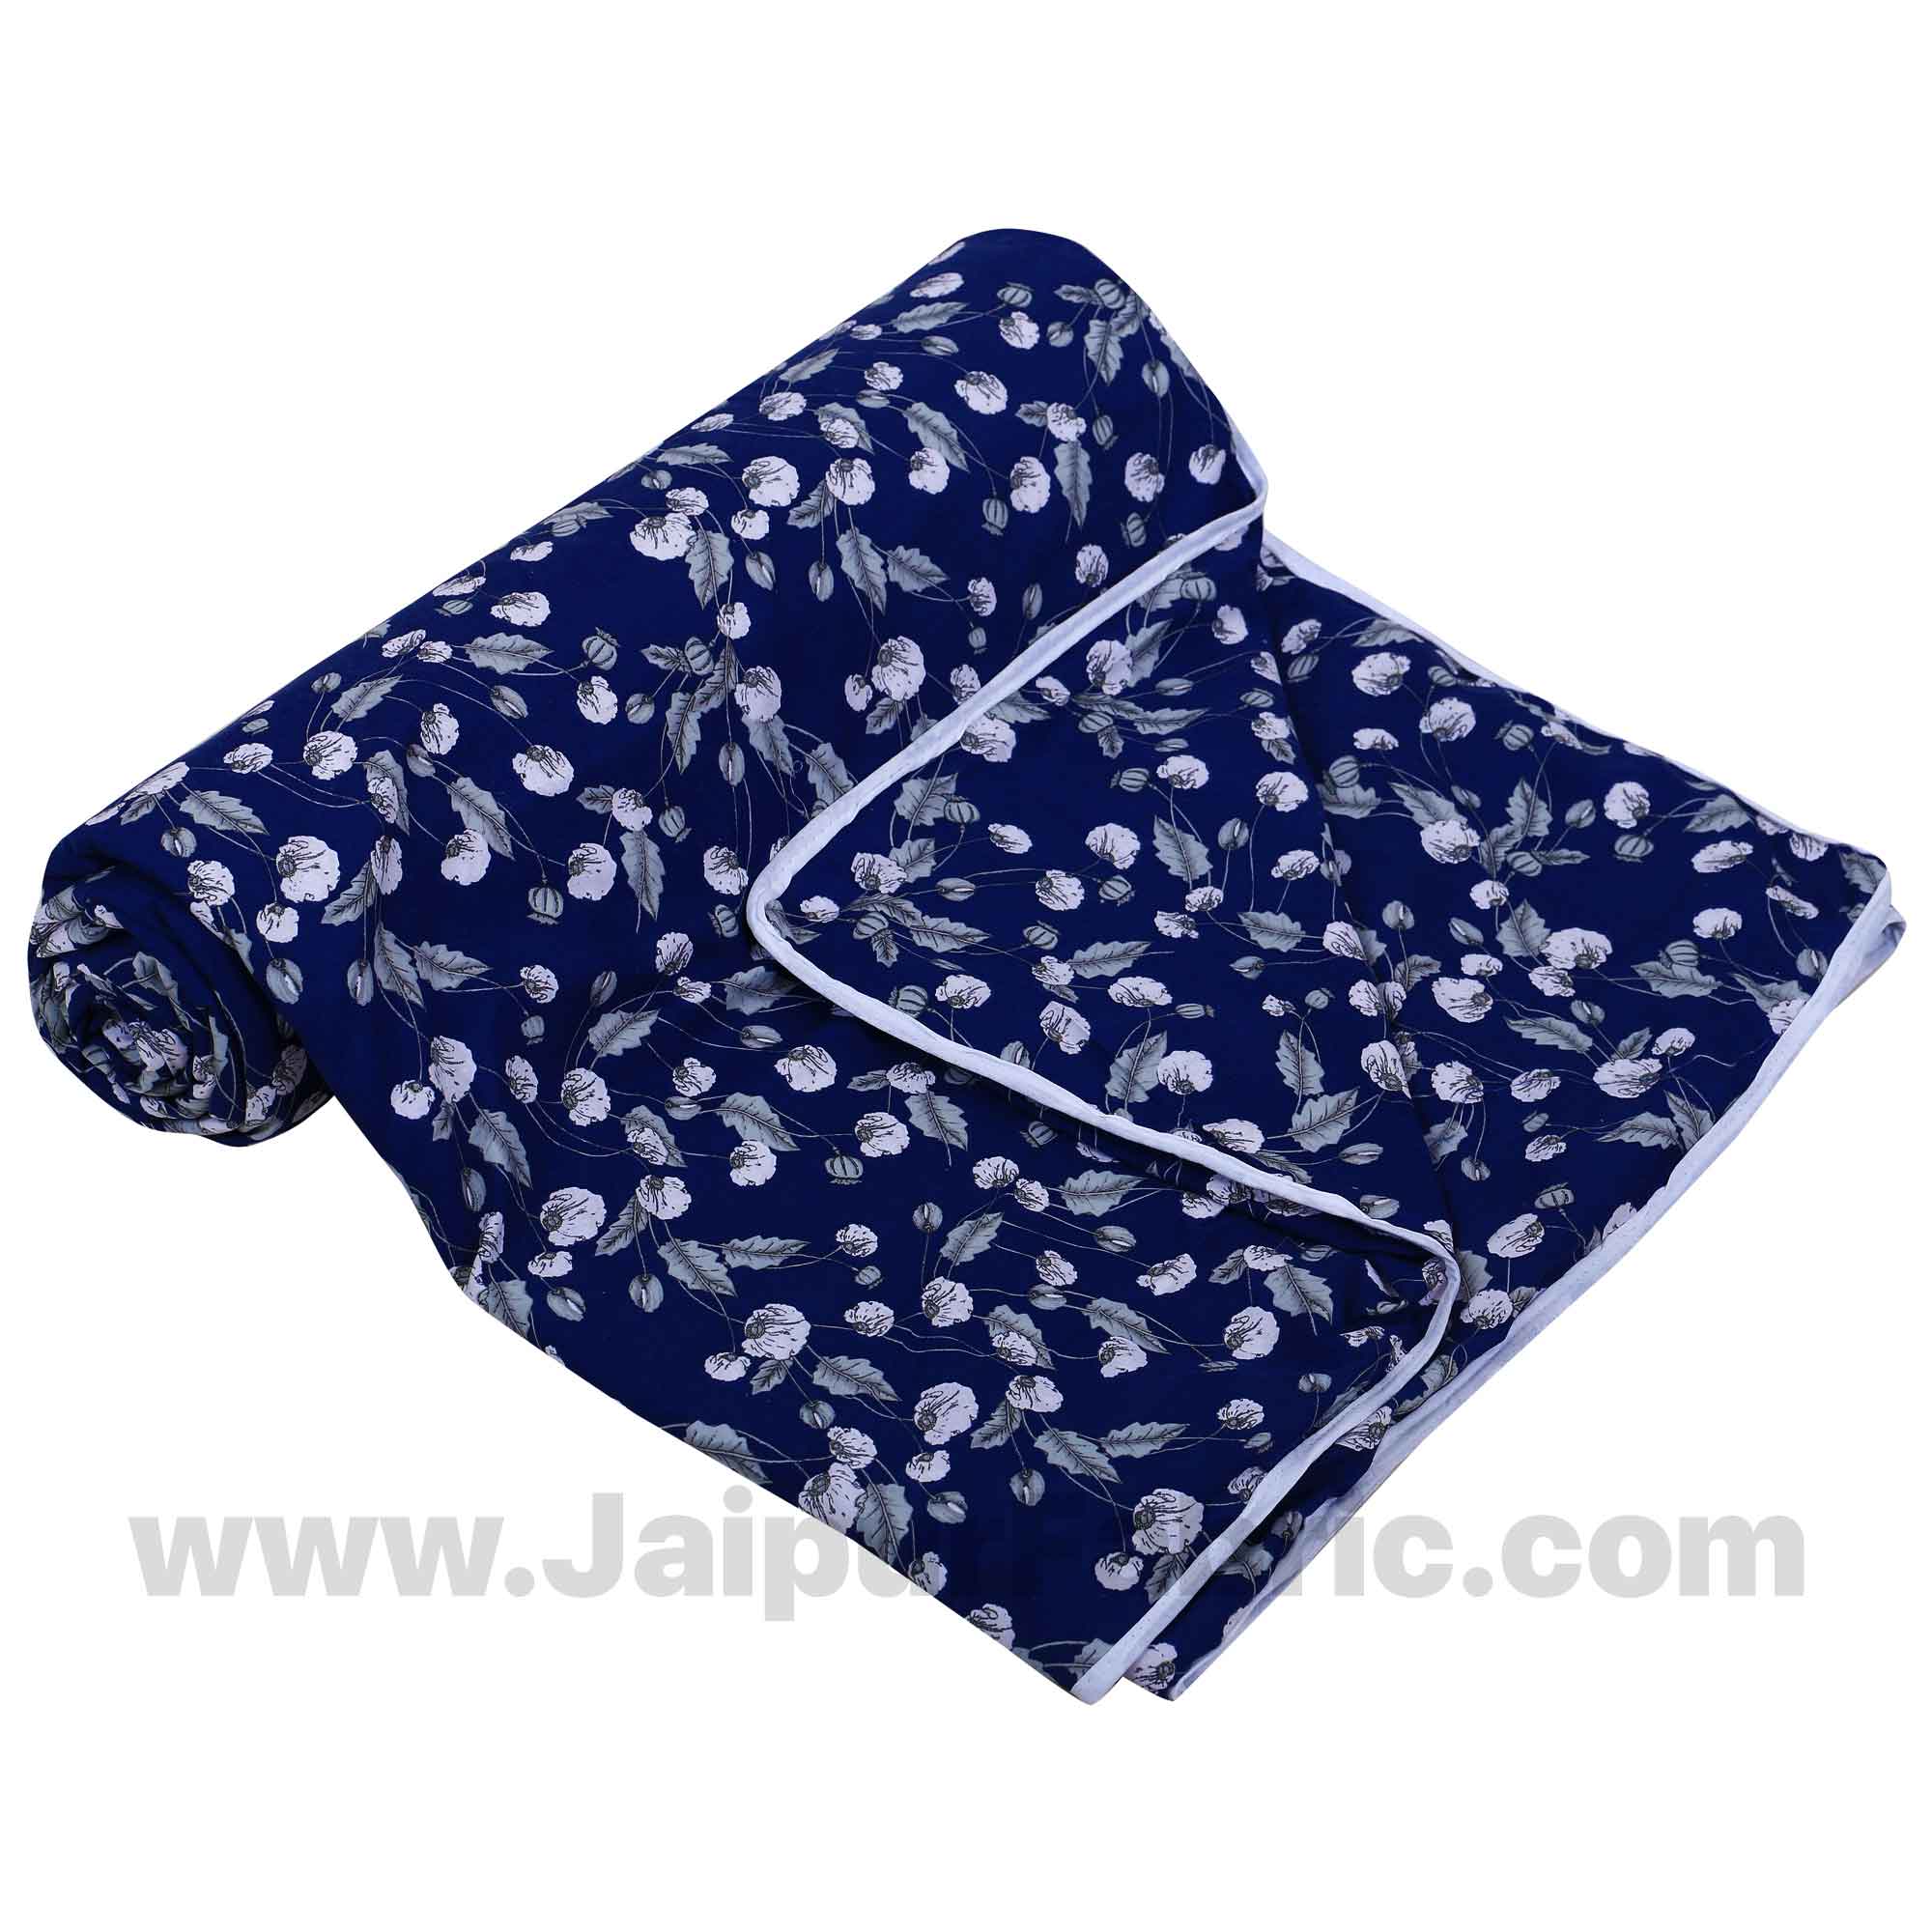 Cotton Navy Blue Classic Reversible Double Blanket/Duvet/Quilt/AC Dohar